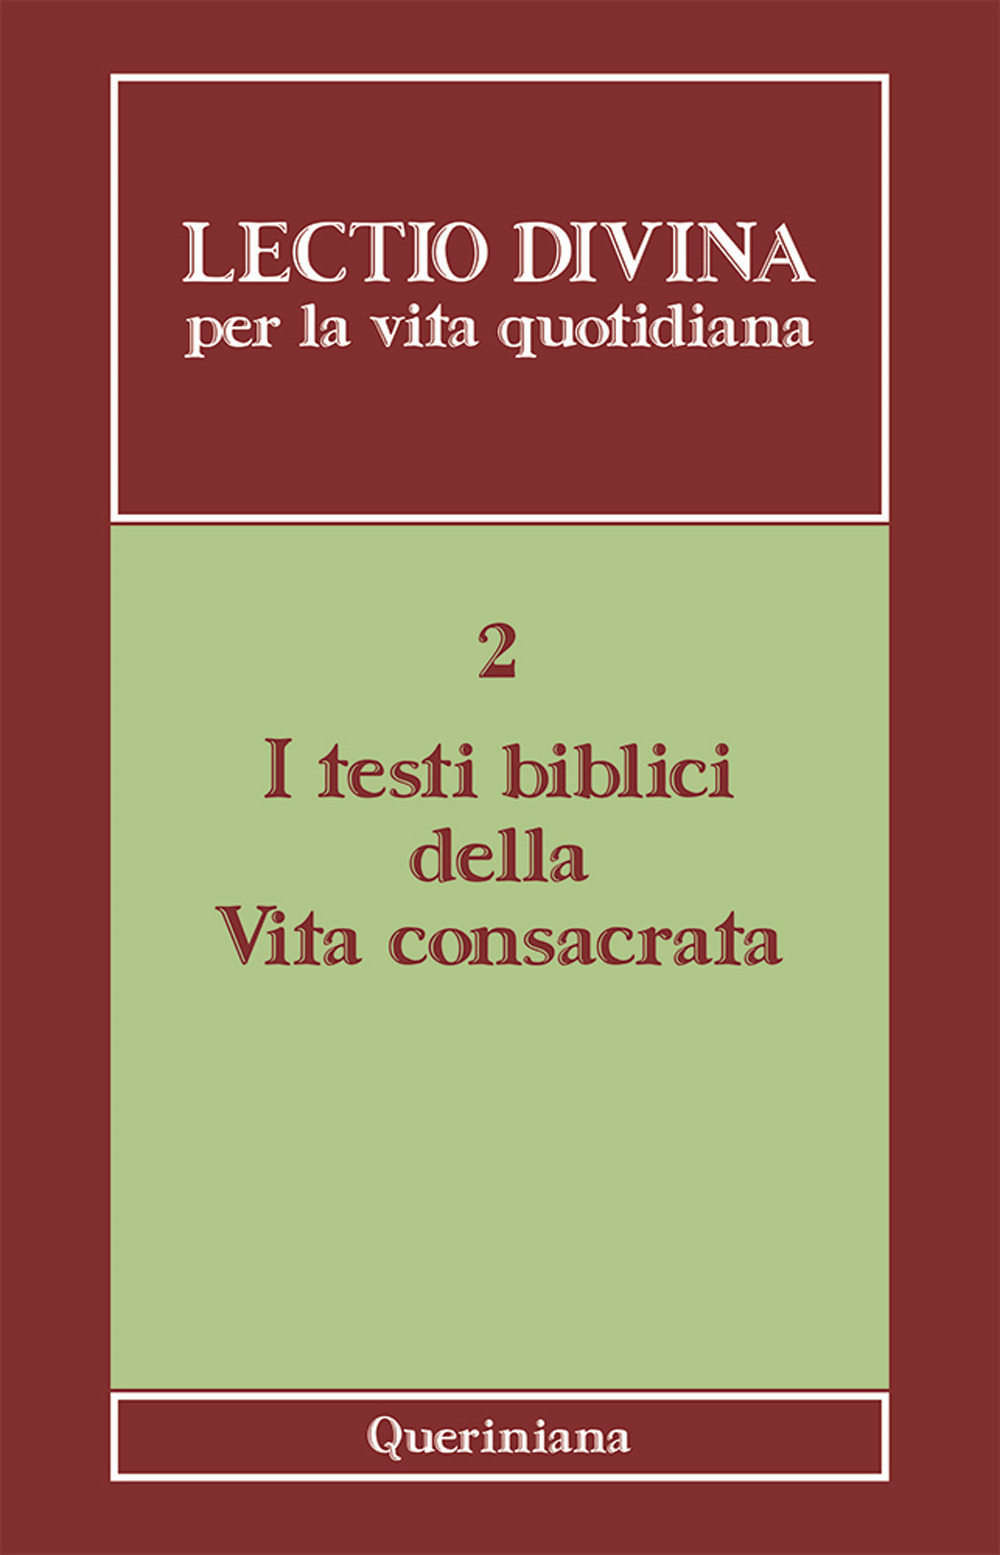 Image of Lectio divina per la vita quotidiana. Vol. 2: I testi biblici della vita consacrata.